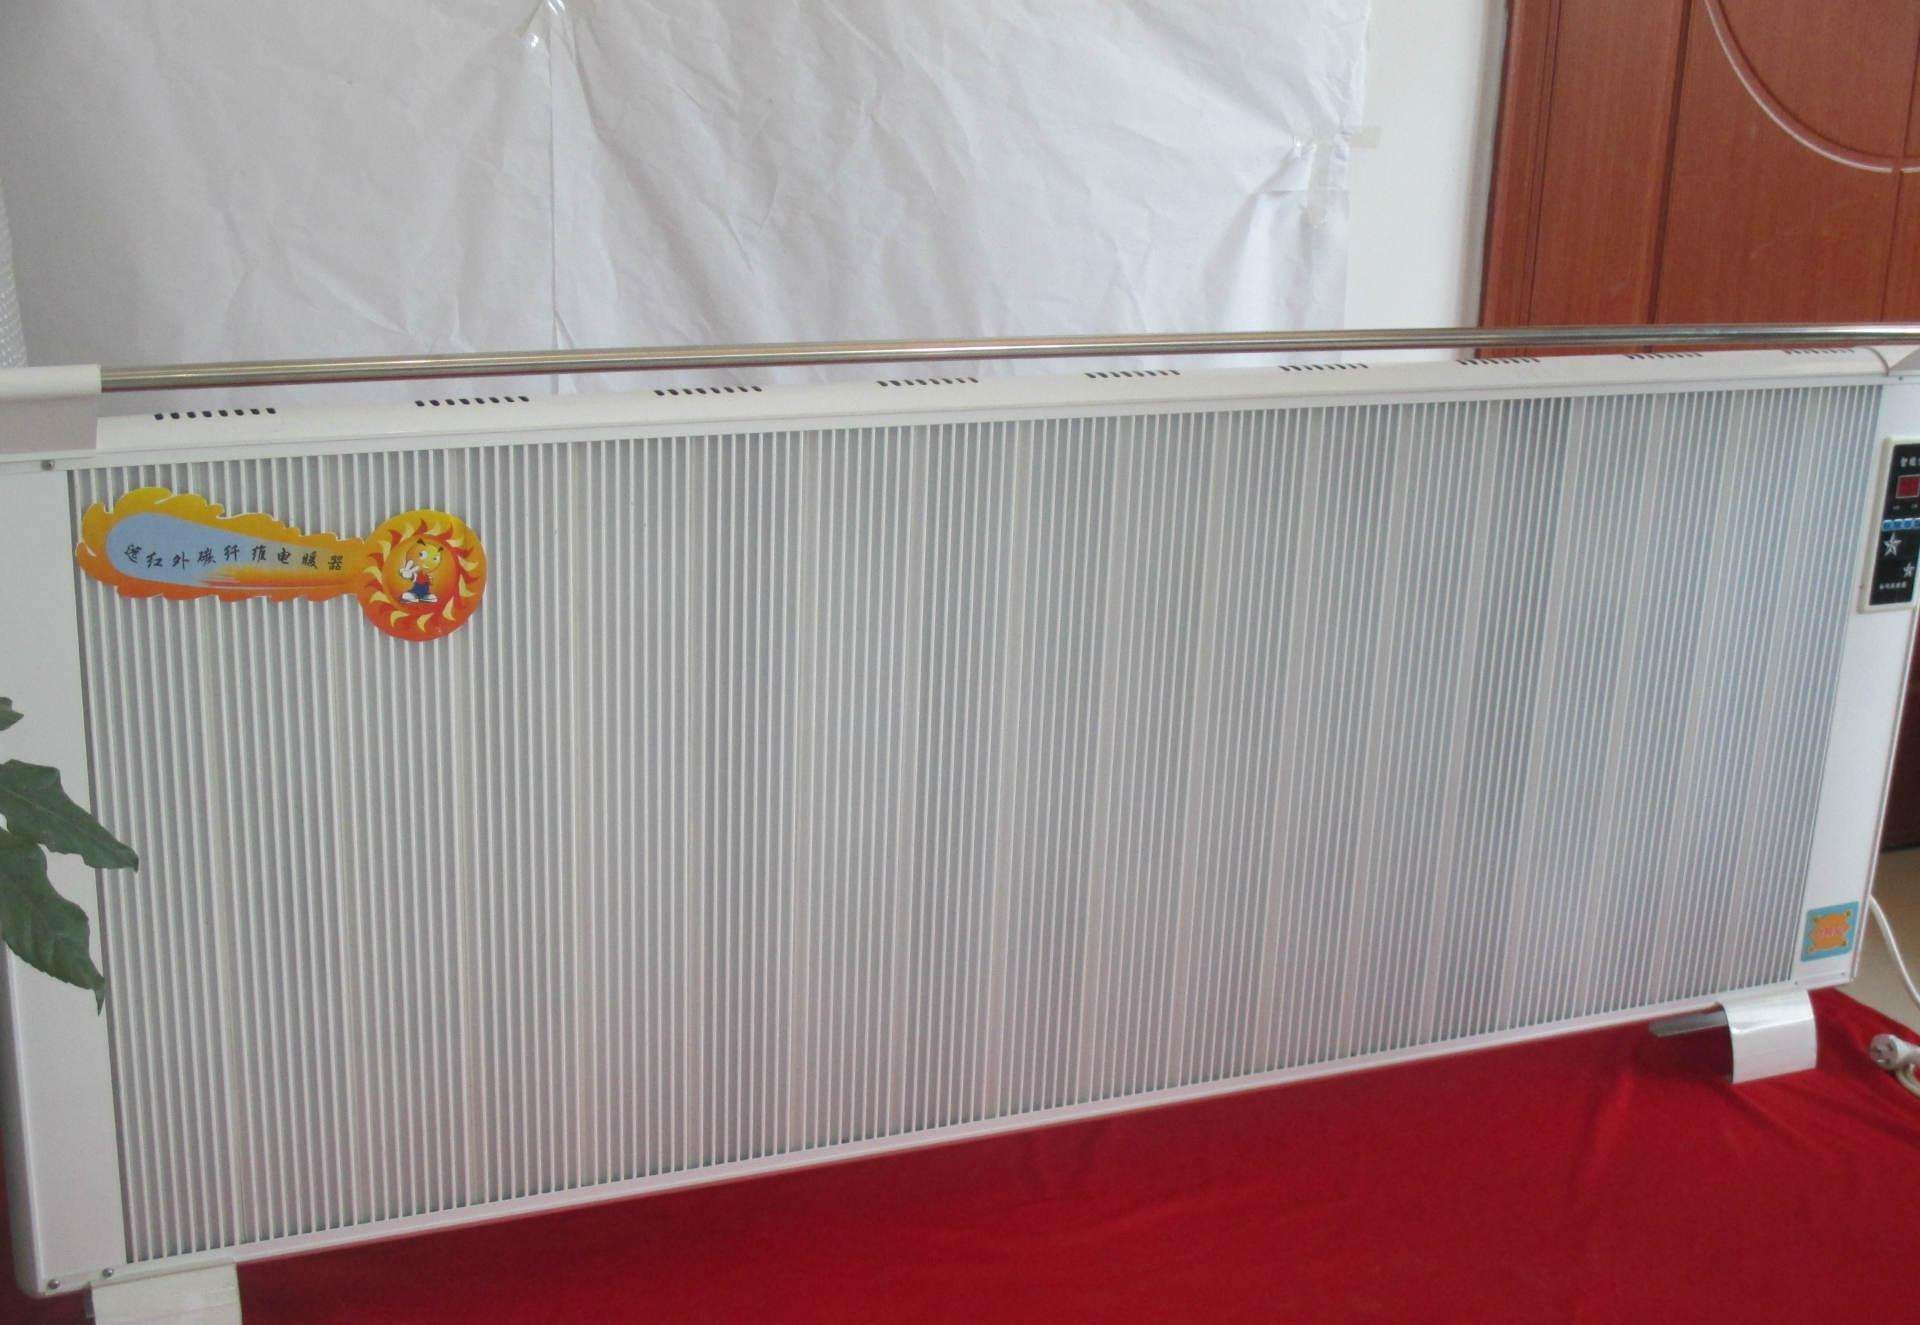 壁挂碳纤维电暖器—壁挂碳纤维电暖器的好品牌推荐